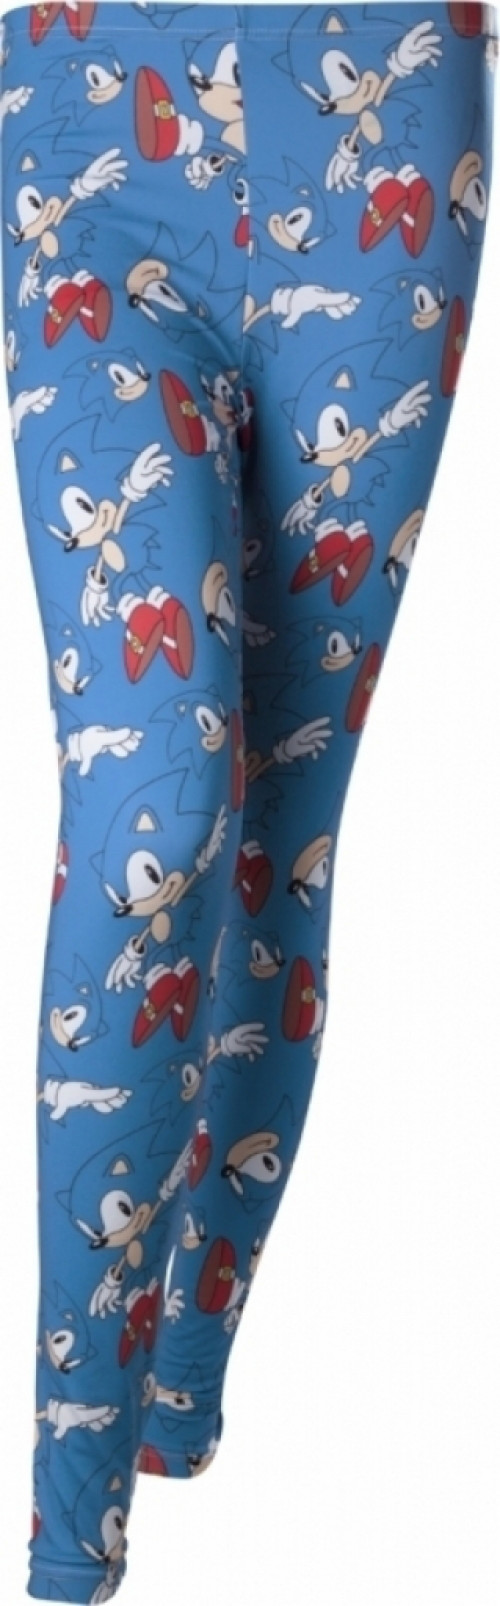 Sonic - Sega All over Print Legging